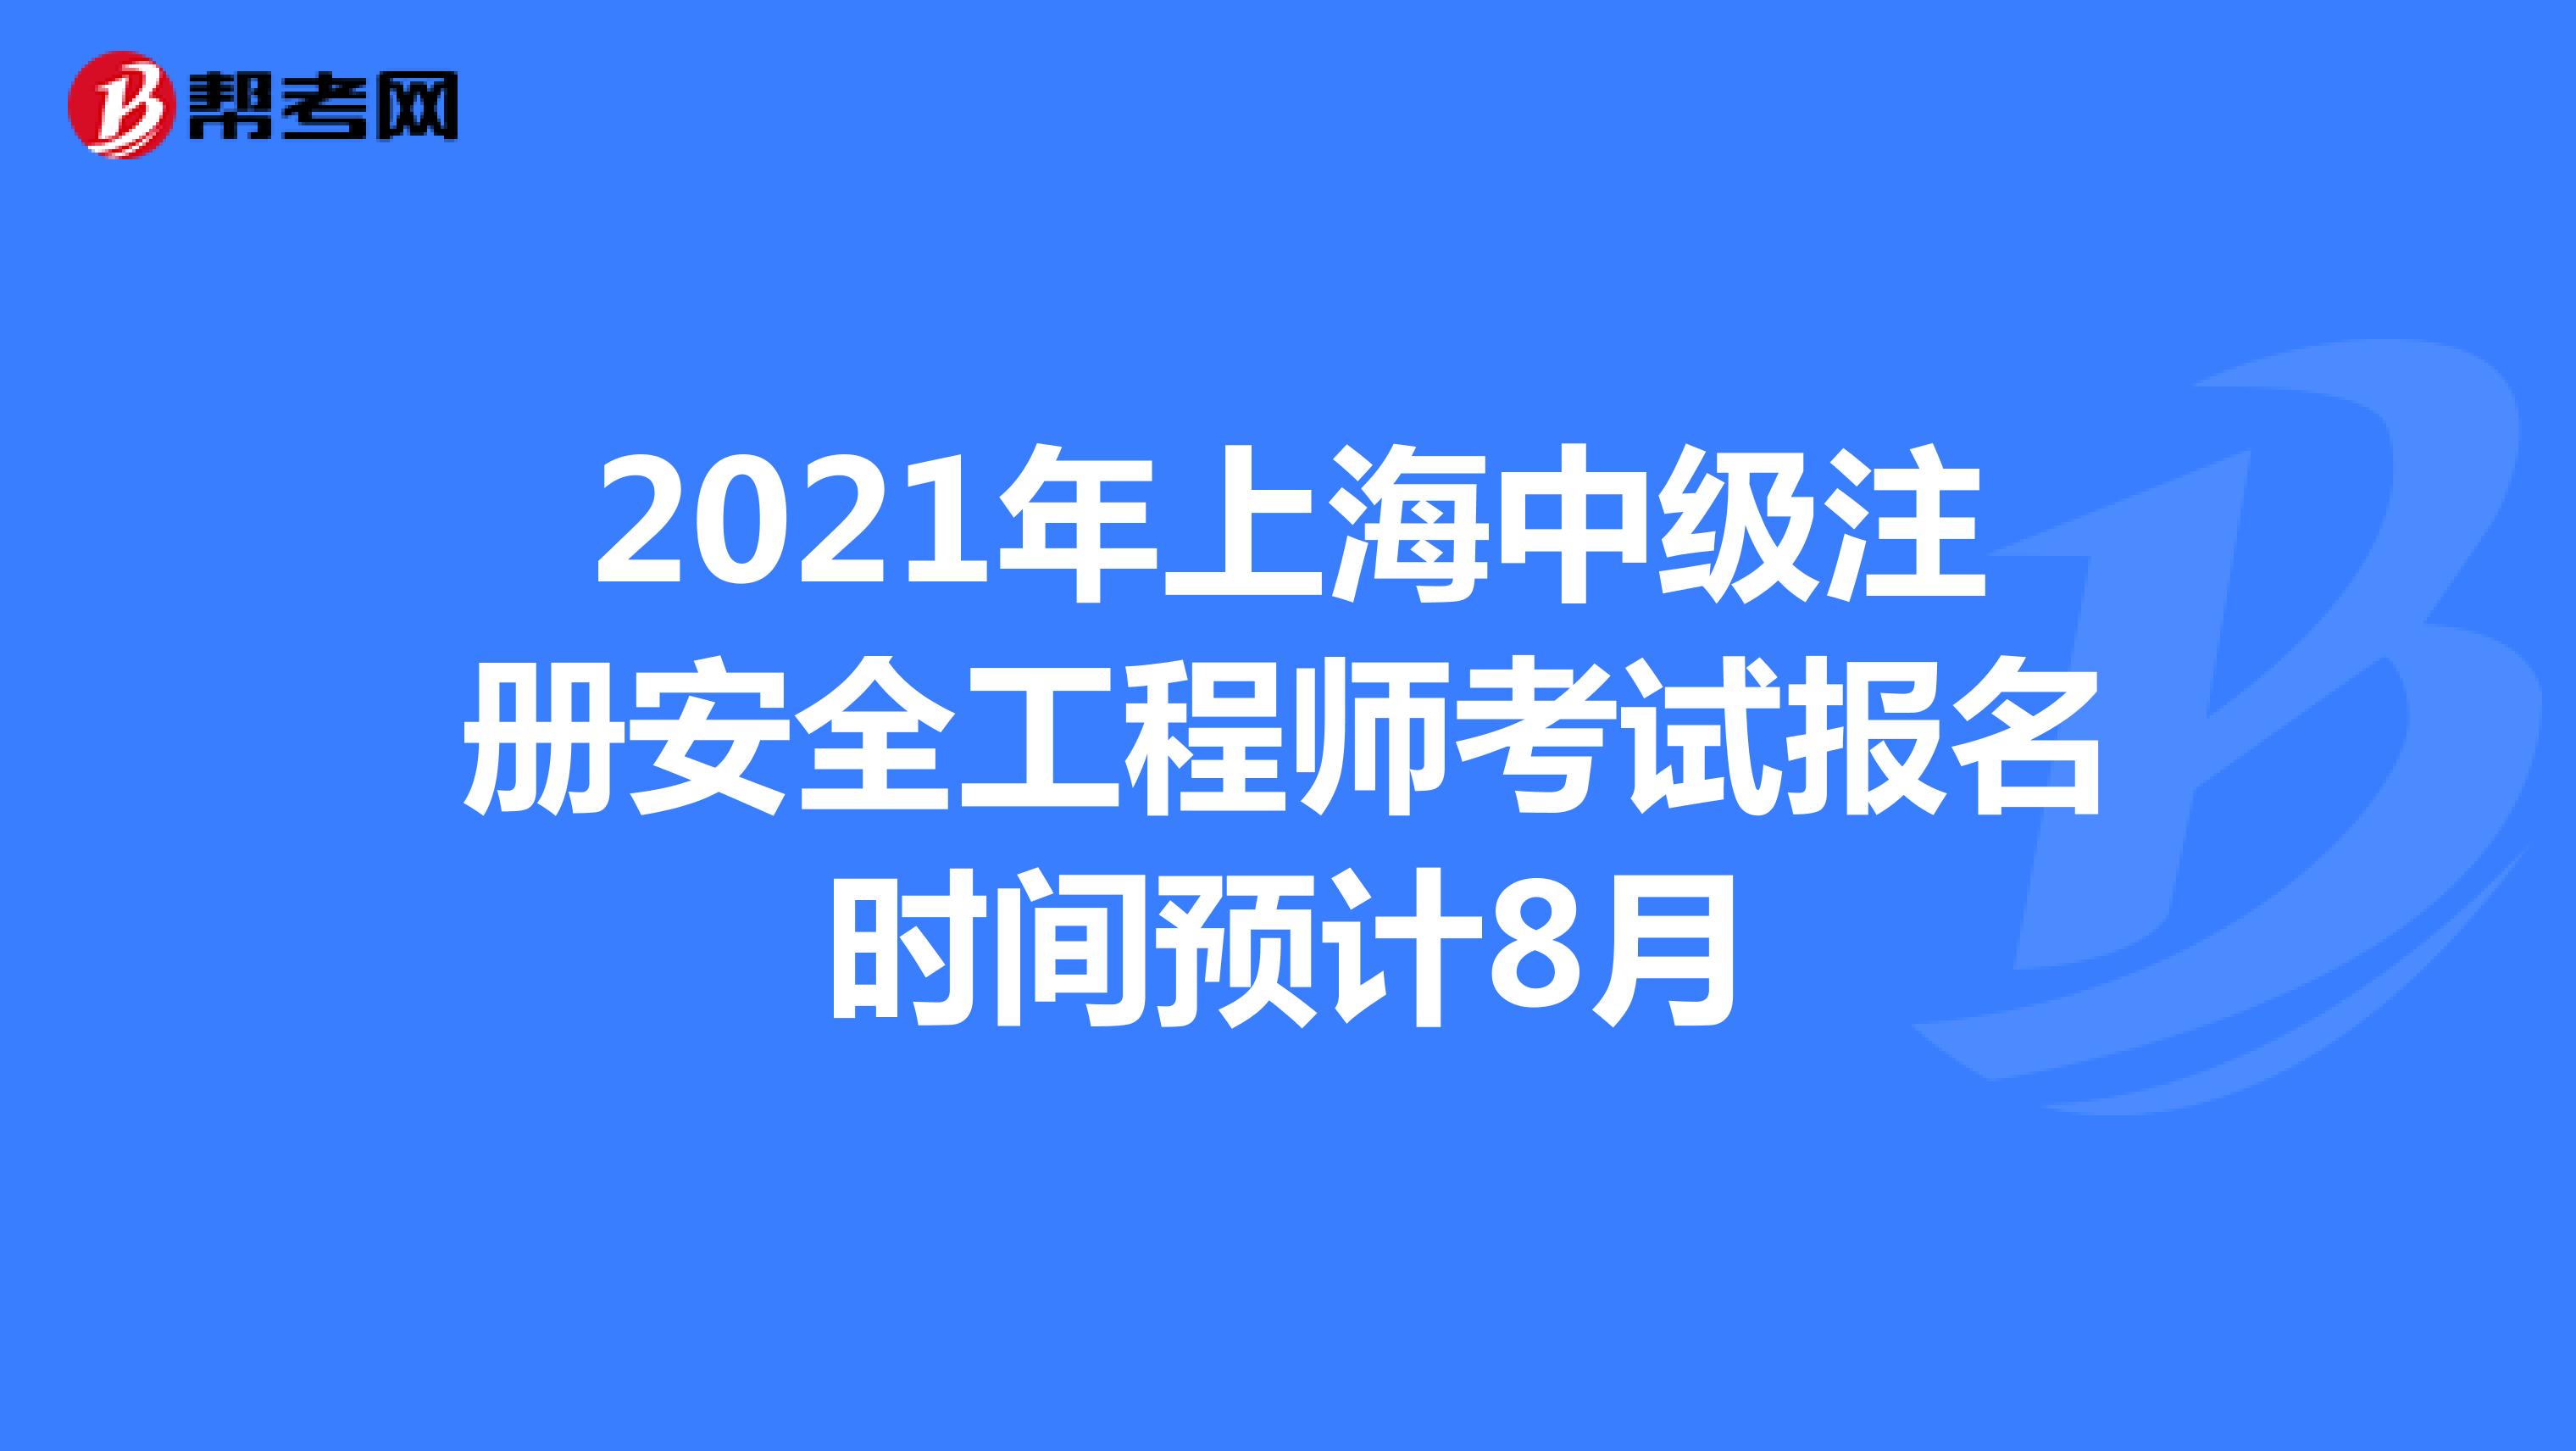 2021年上海中级注册安全工程师考试报名时间预计8月